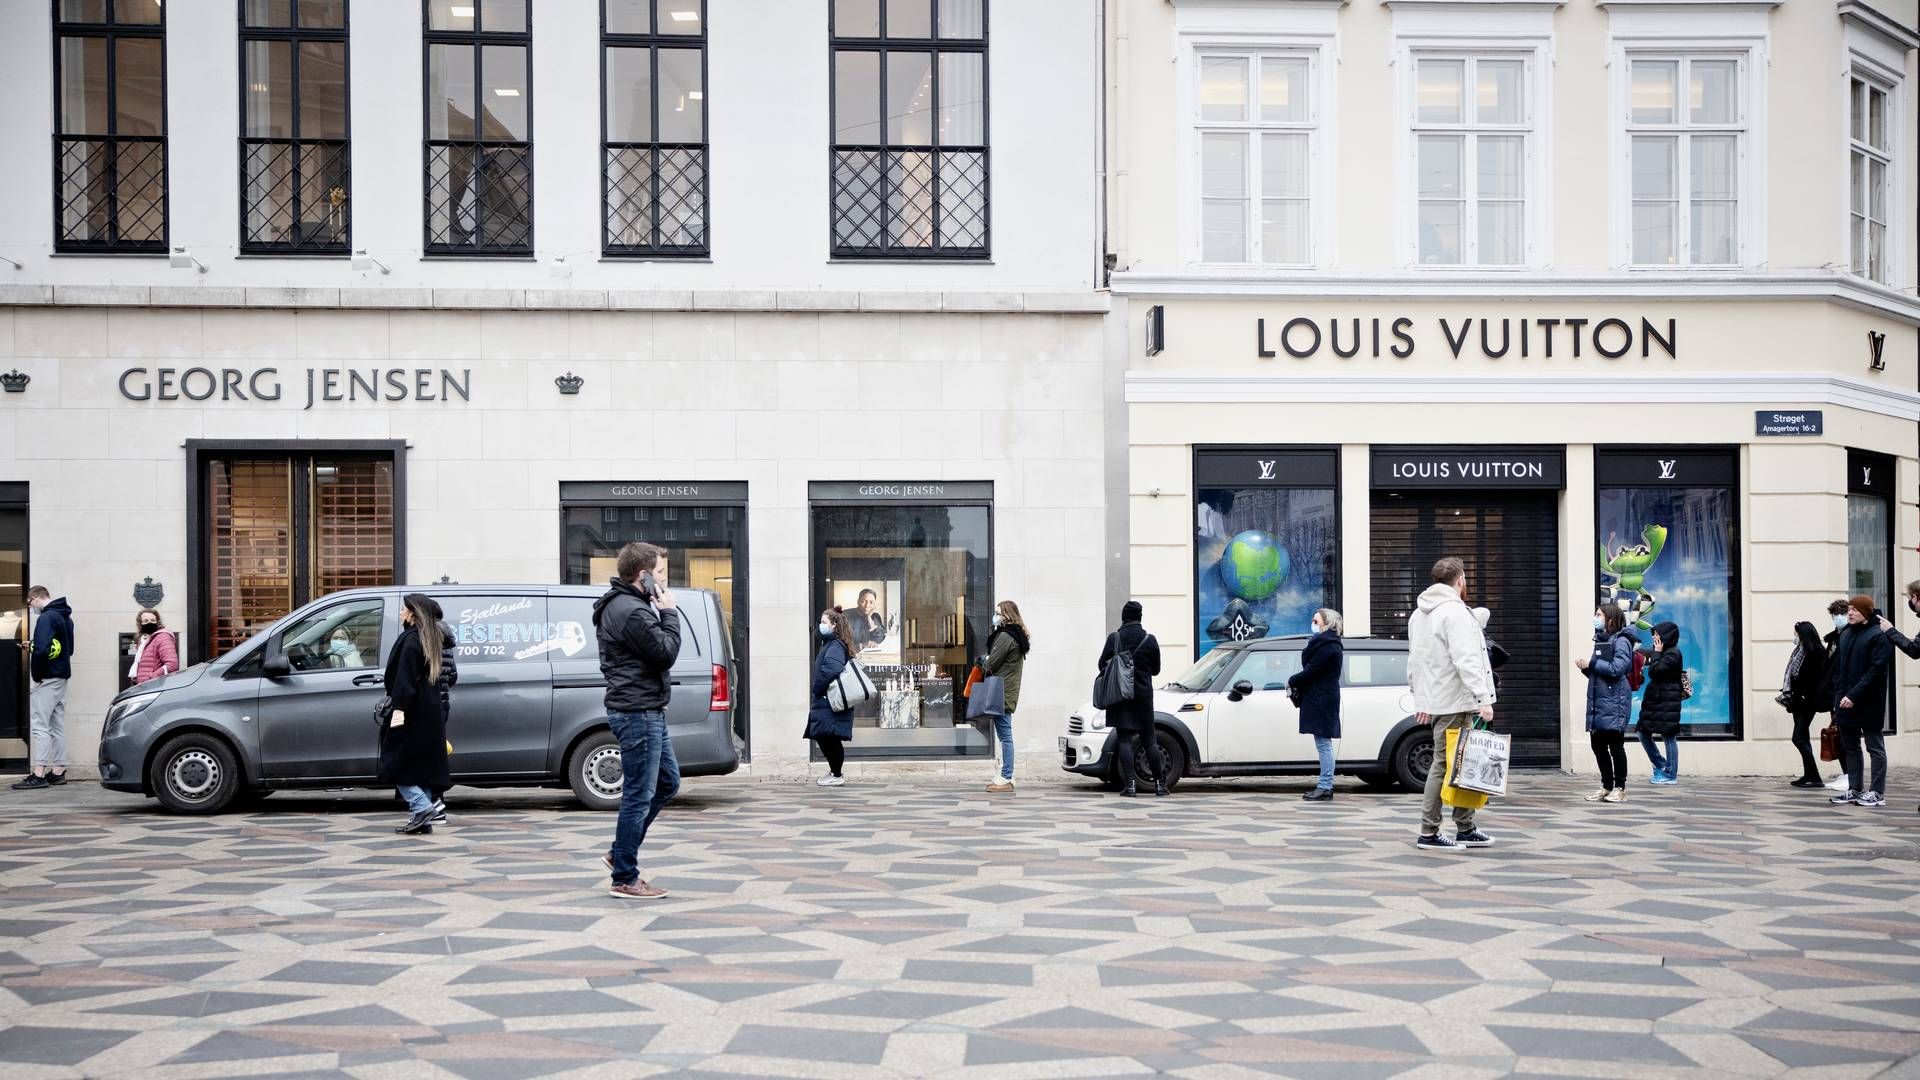 Georg Jensen har blandt andet egen forretning på Strøget i København mellem Louis Vuitton og Royal Copenhagen. | Foto: Valdemar Ren/Ritzau Scanpix